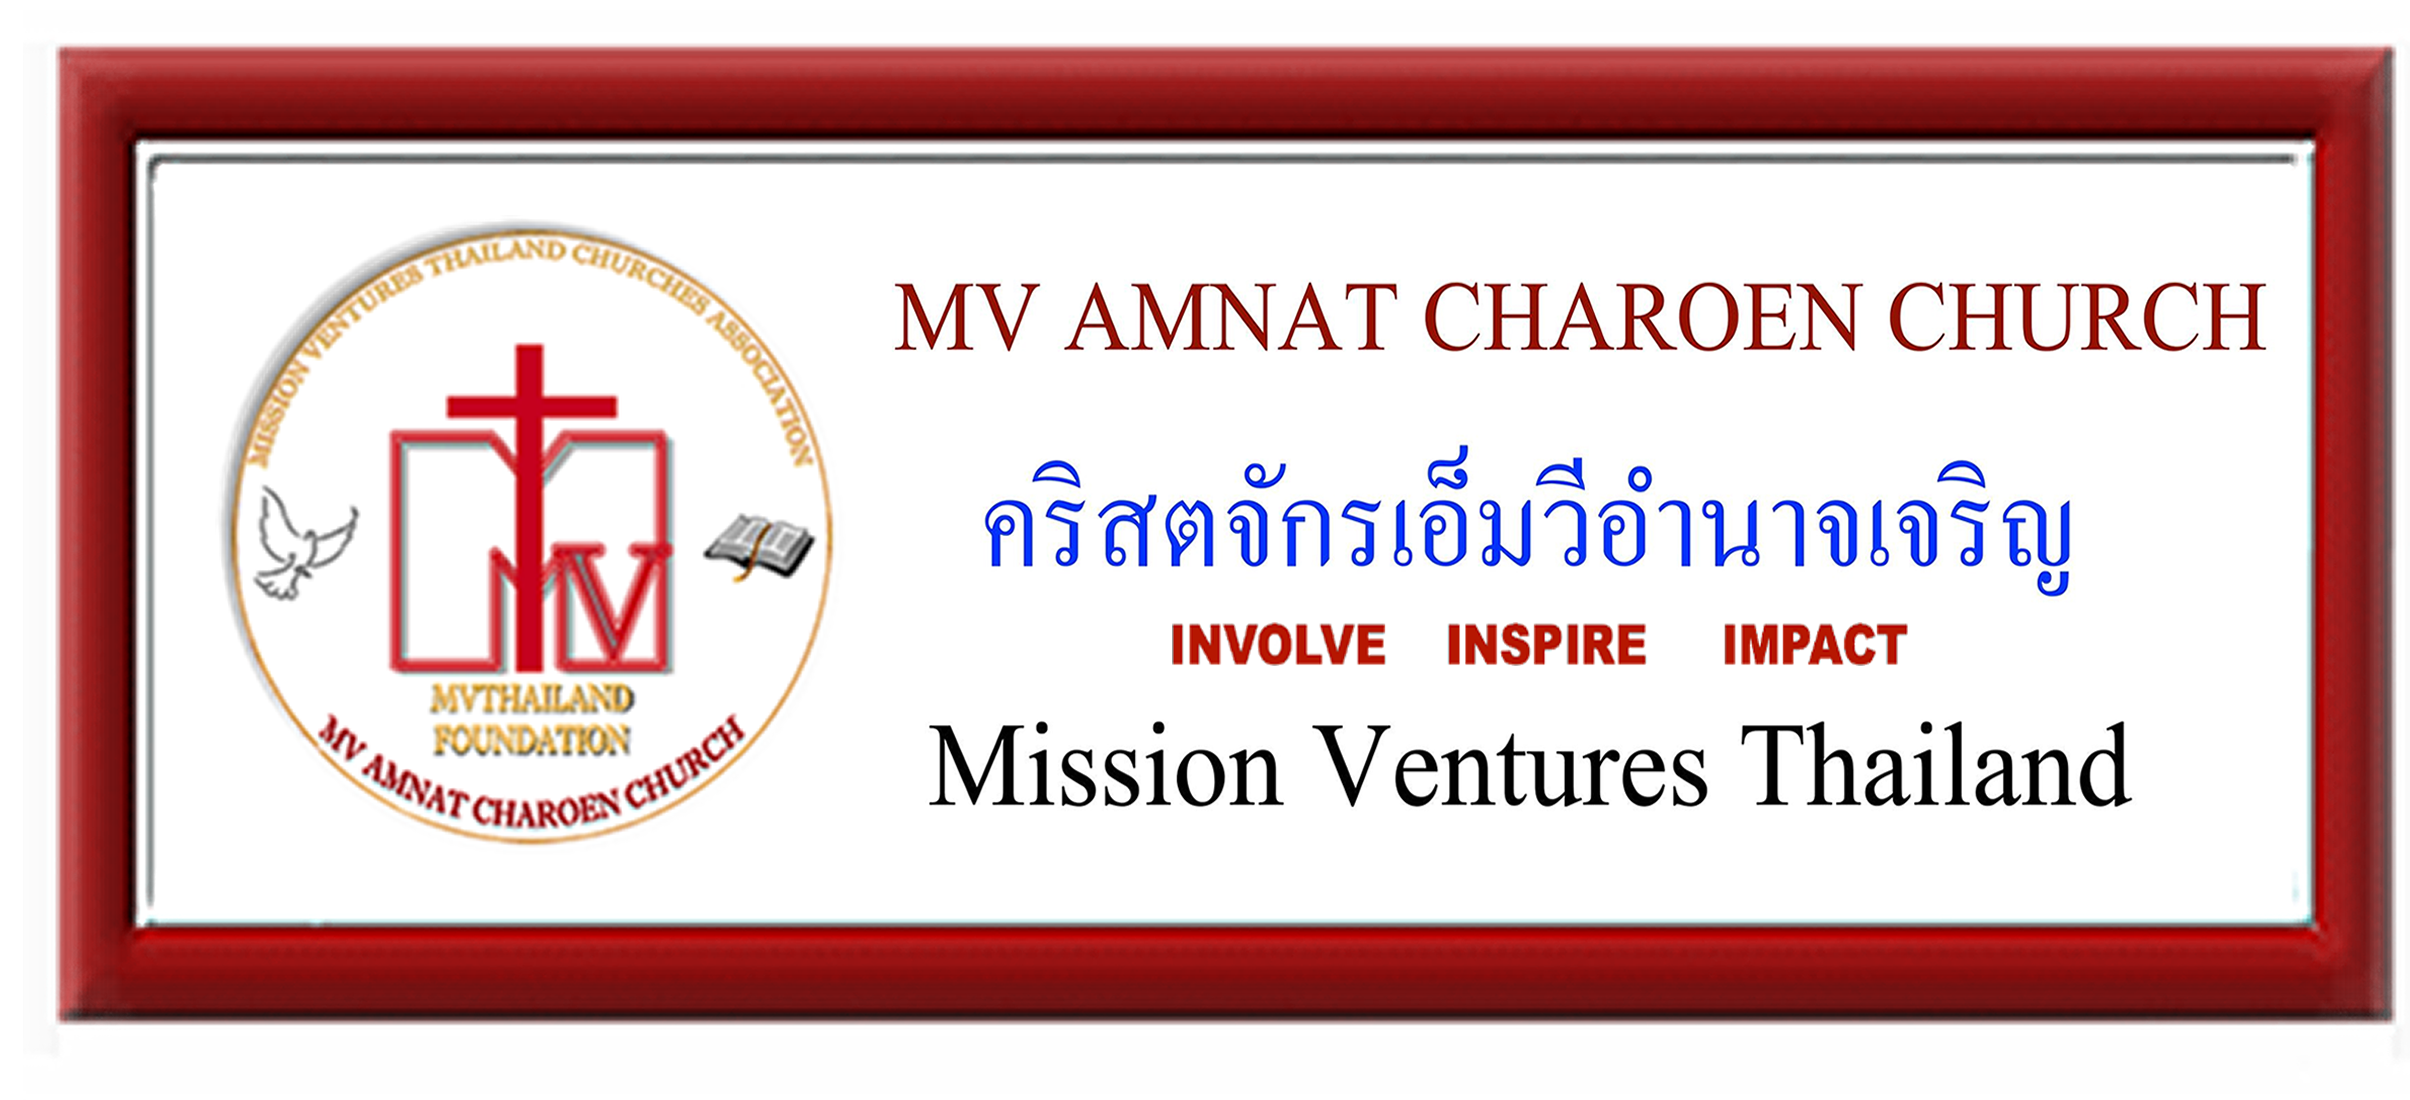 MV Amnat Charoen Church